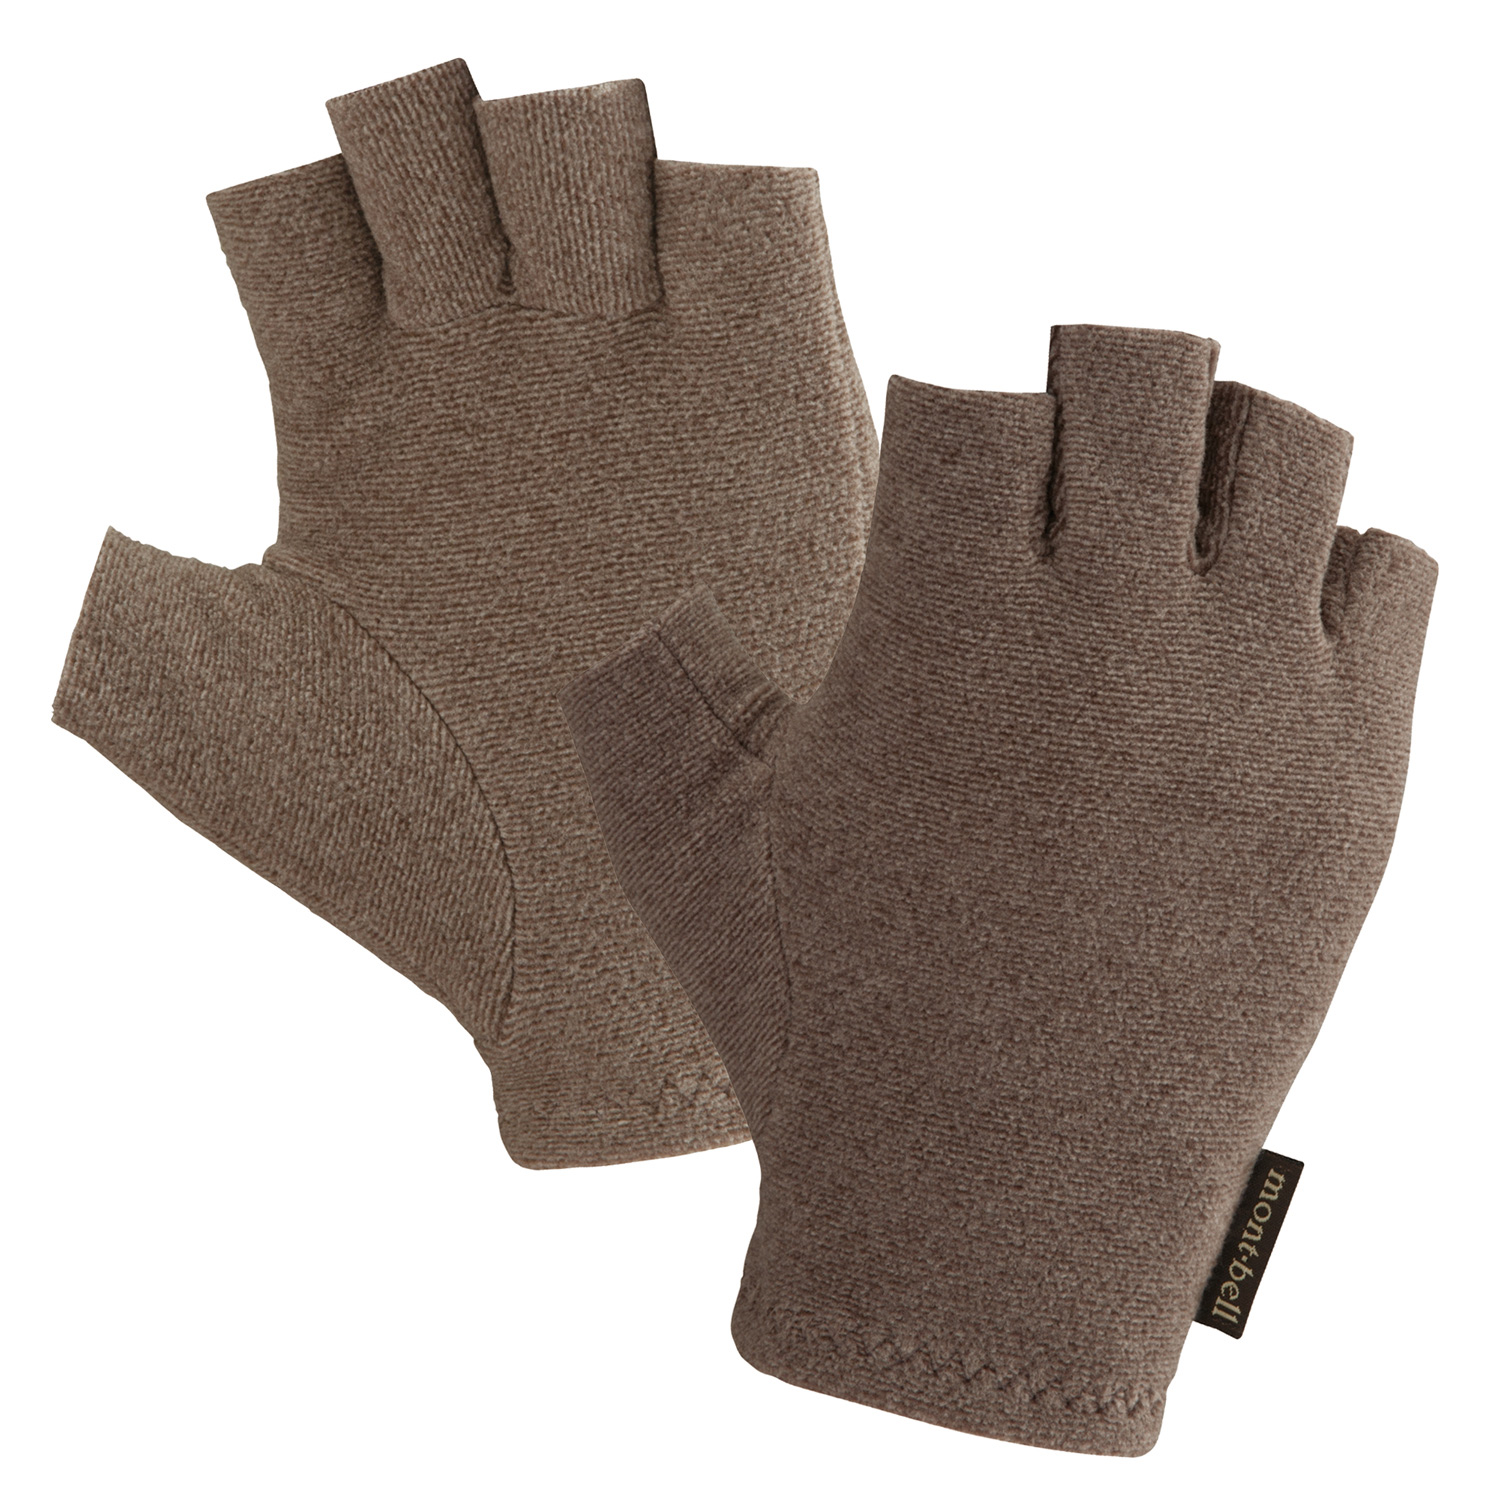 CHAMEECE Fingerless Gloves Men's